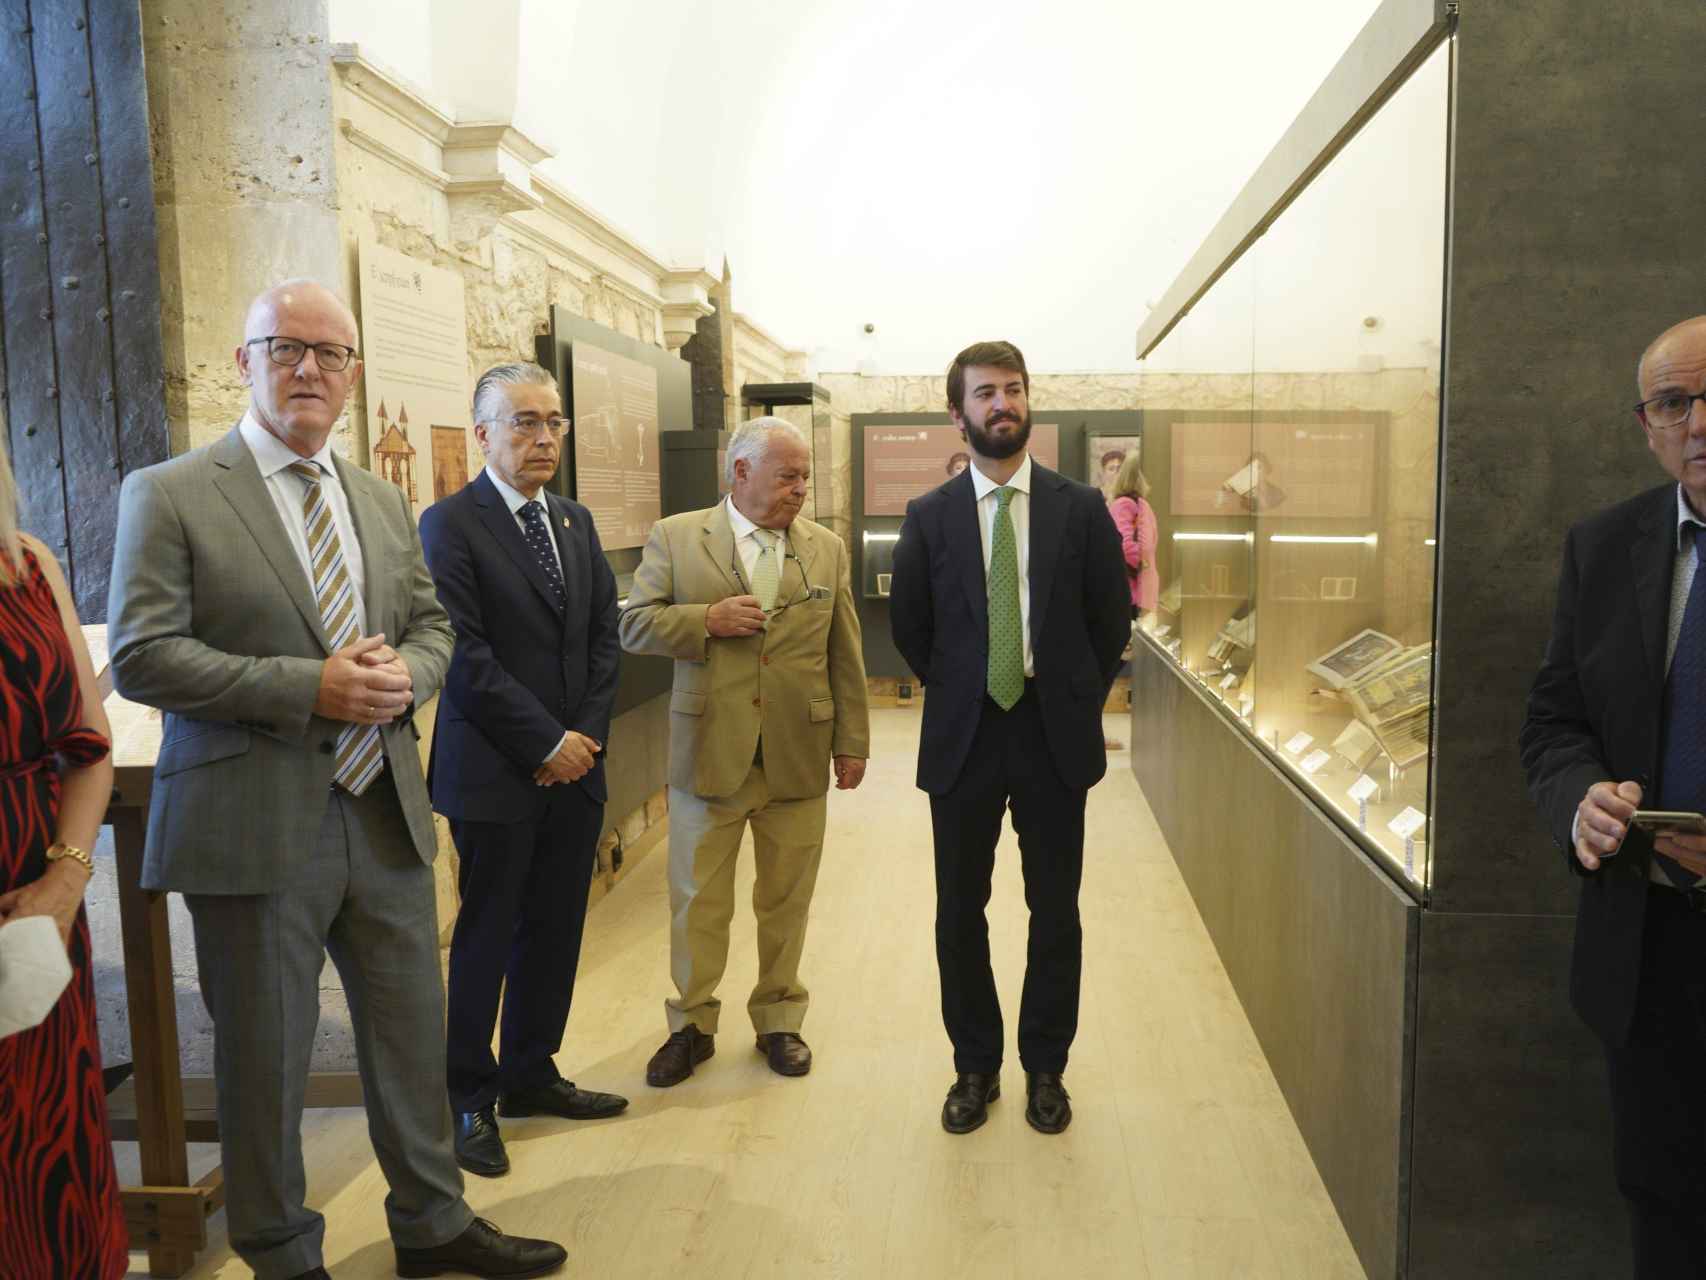 El vicepresidente de la Junta, Juan García-Gallardo, en la inauguración del Centro de Interpretación ‘Museo del Libro’ de Covarrubias, en Burgos.